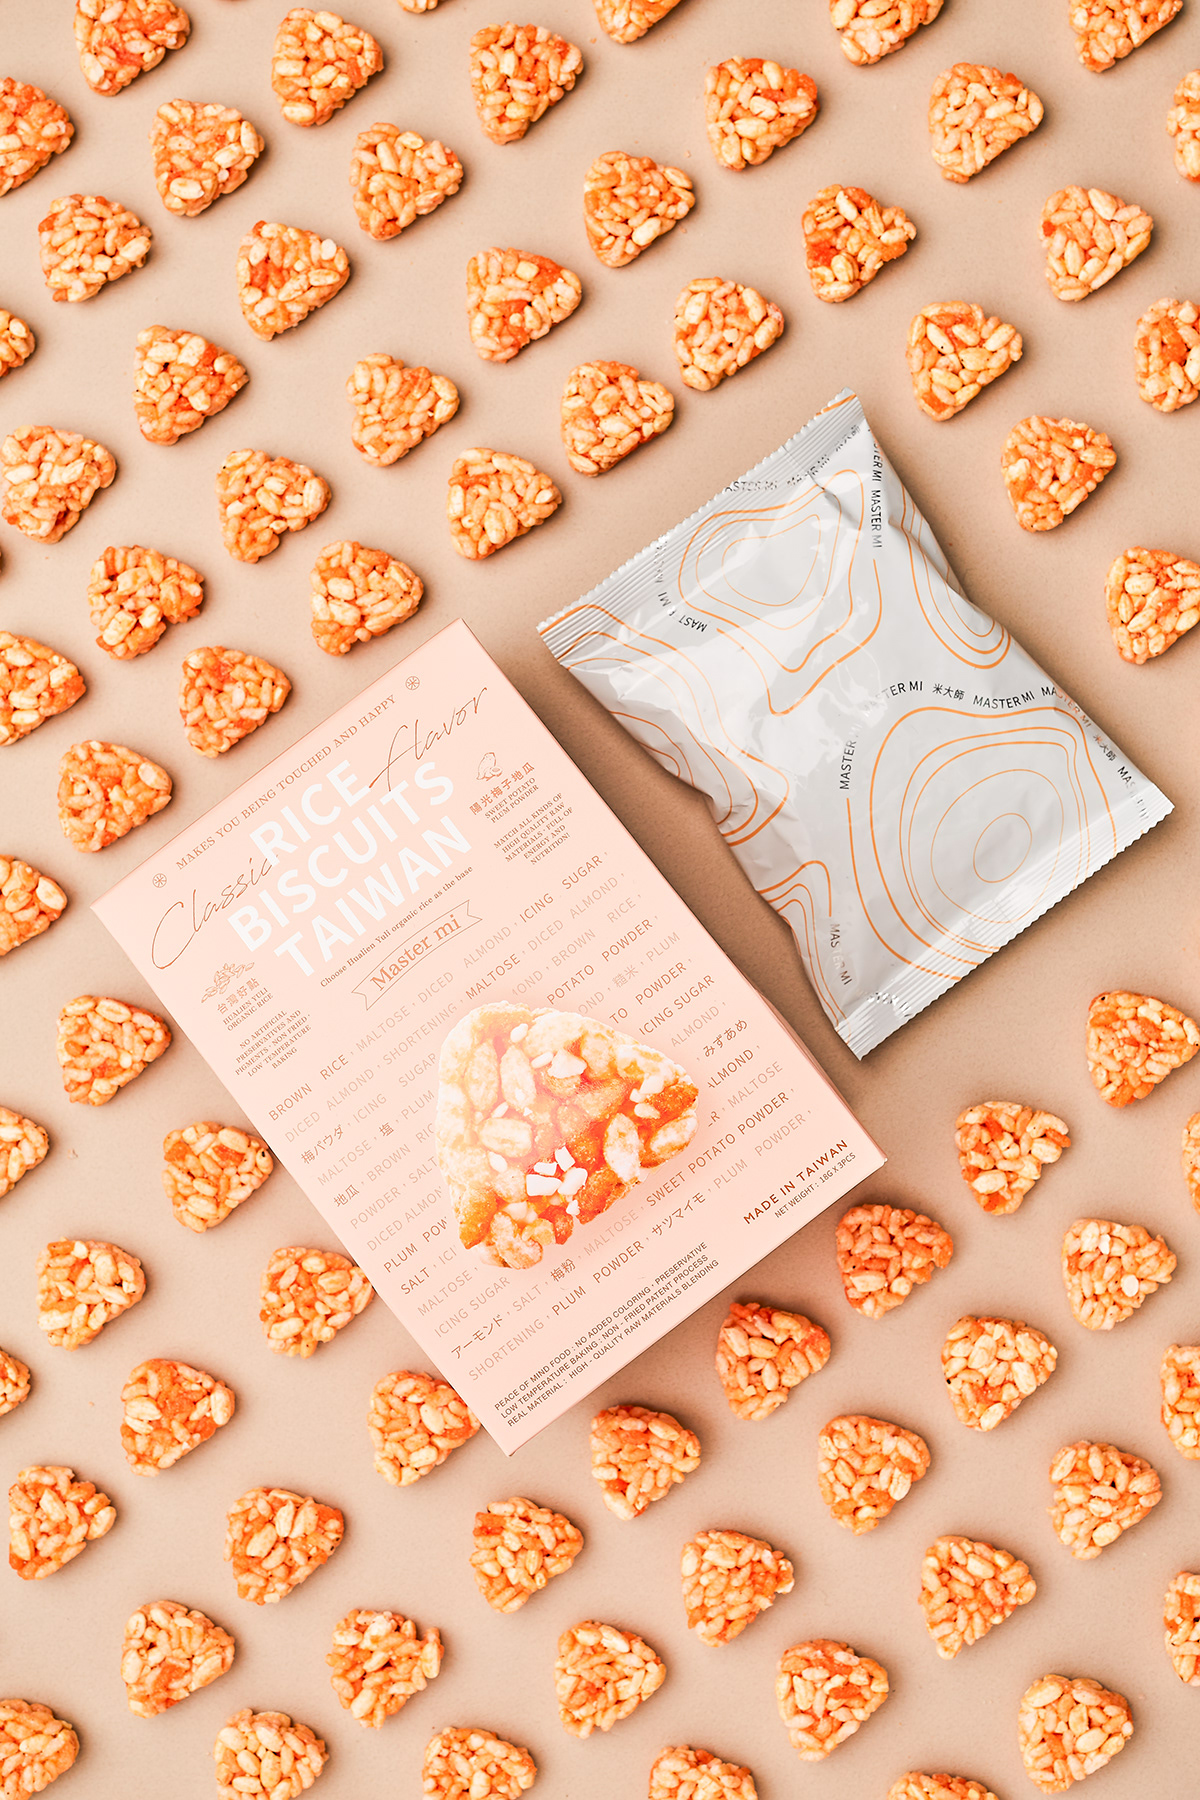 包裝設計 平面設計 design package brand 包裝 餅乾 cookie snacks